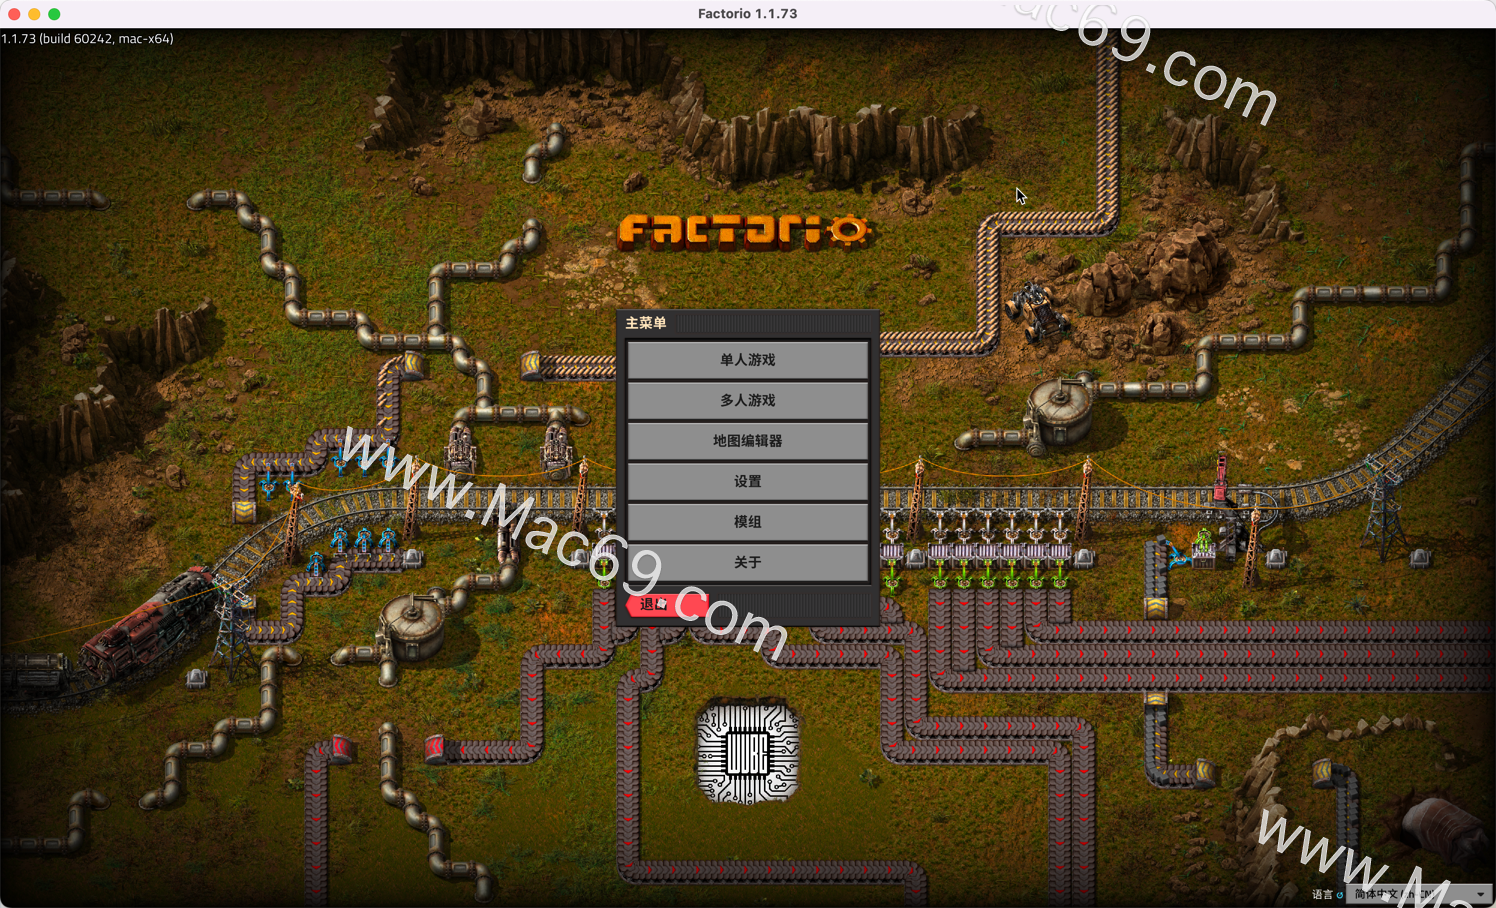 异星工厂factorio mac(模拟游戏)